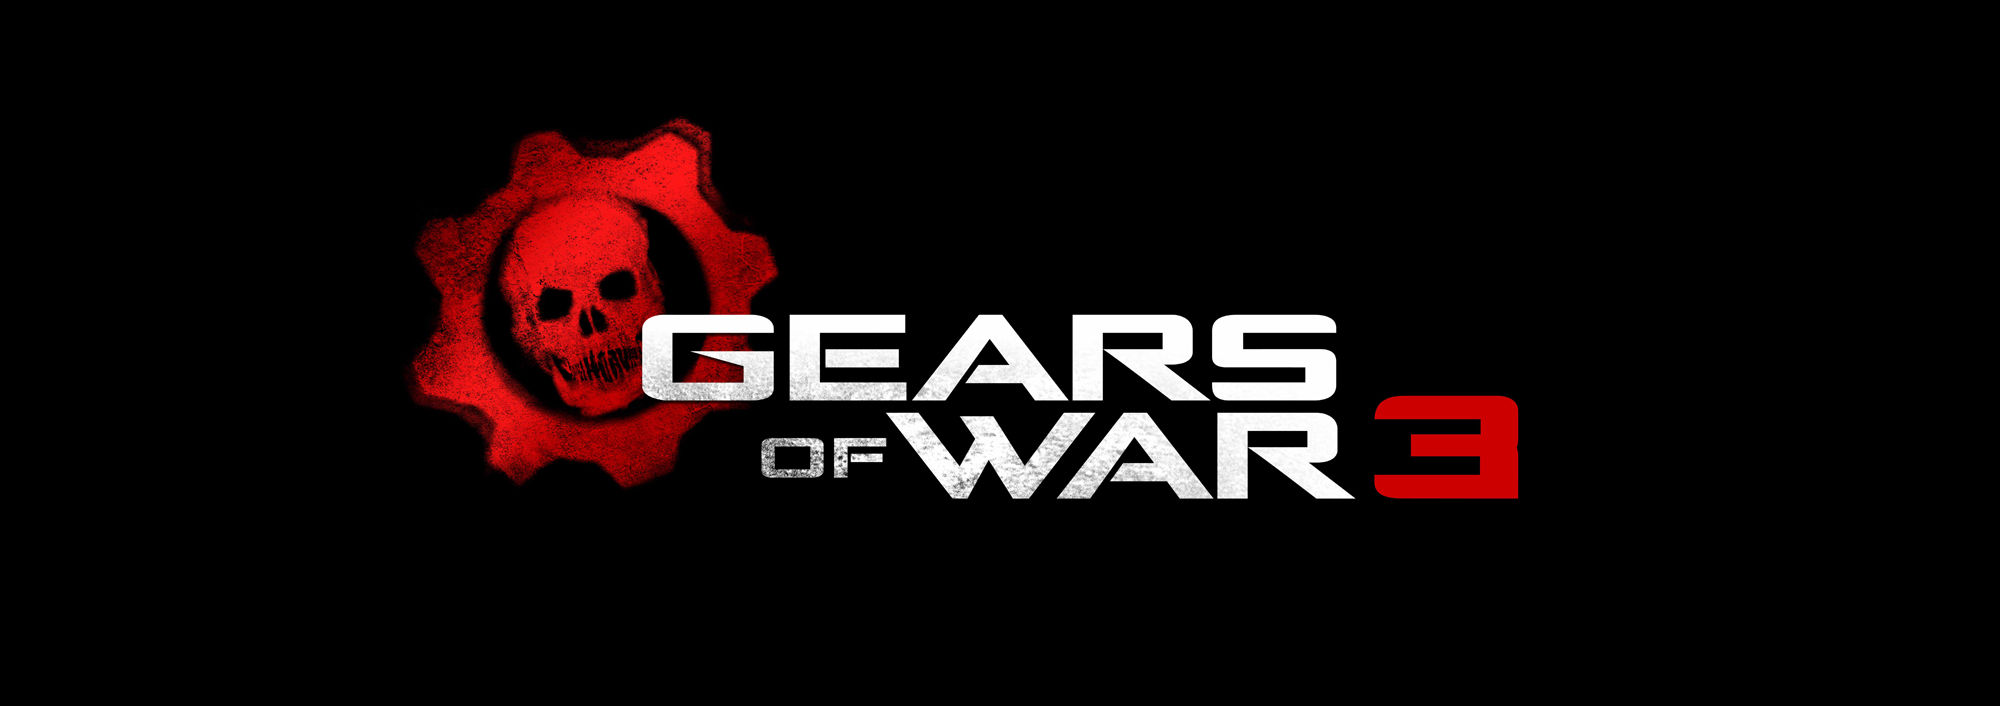 マルチプレイは全世界共通 Gears Of War 3 の日本語版仕様が公開 吹き替えを担当するキャストや分離欠損表現の変更点も明らかに はちまき違い